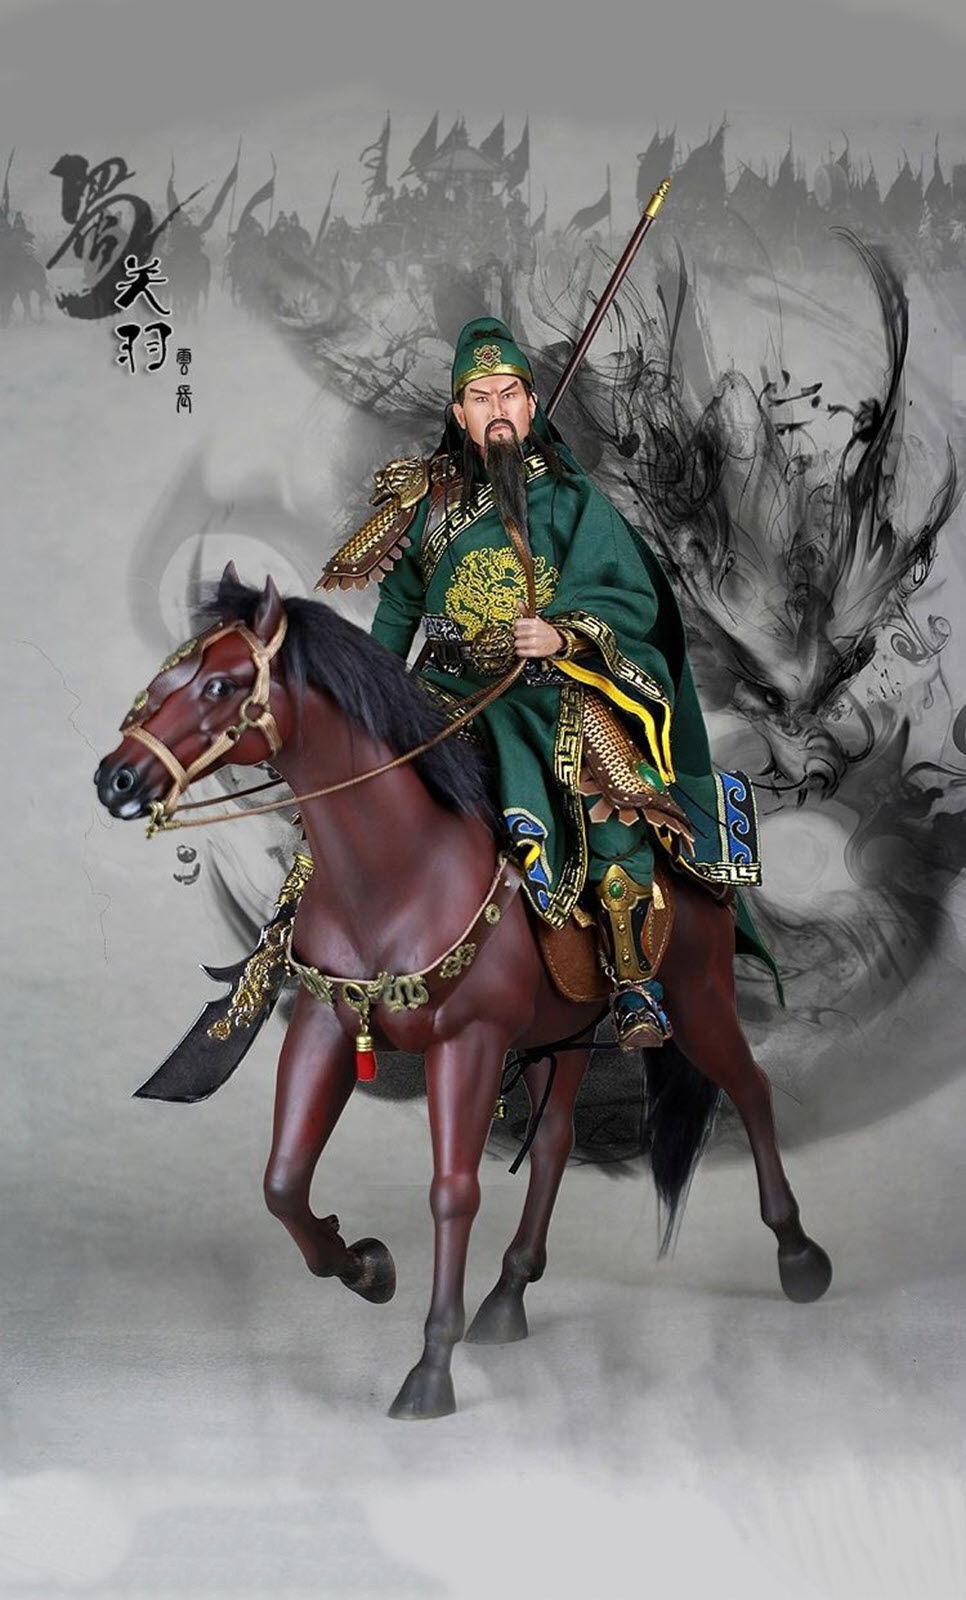 Một bức ảnh quay lưng của Quan Vũ trên lưng ngựa